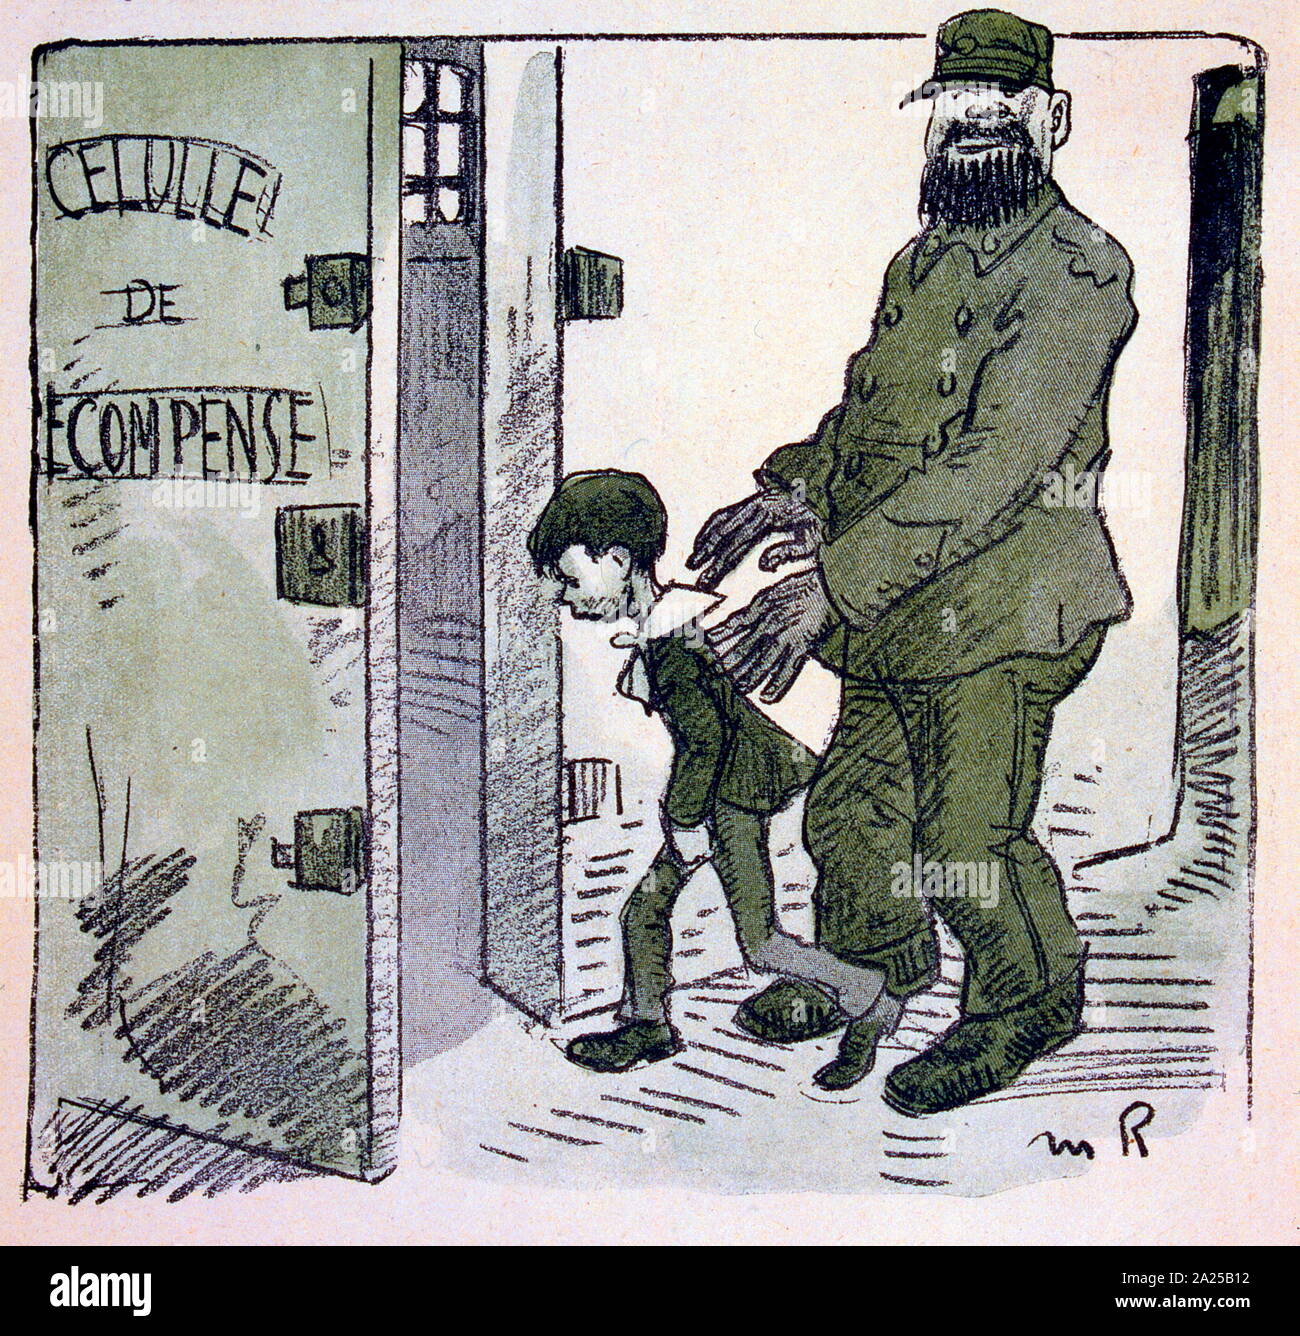 Illustration satirique français, 1909, montrant, mettre l'enfant dans un établissement correctionnel Banque D'Images